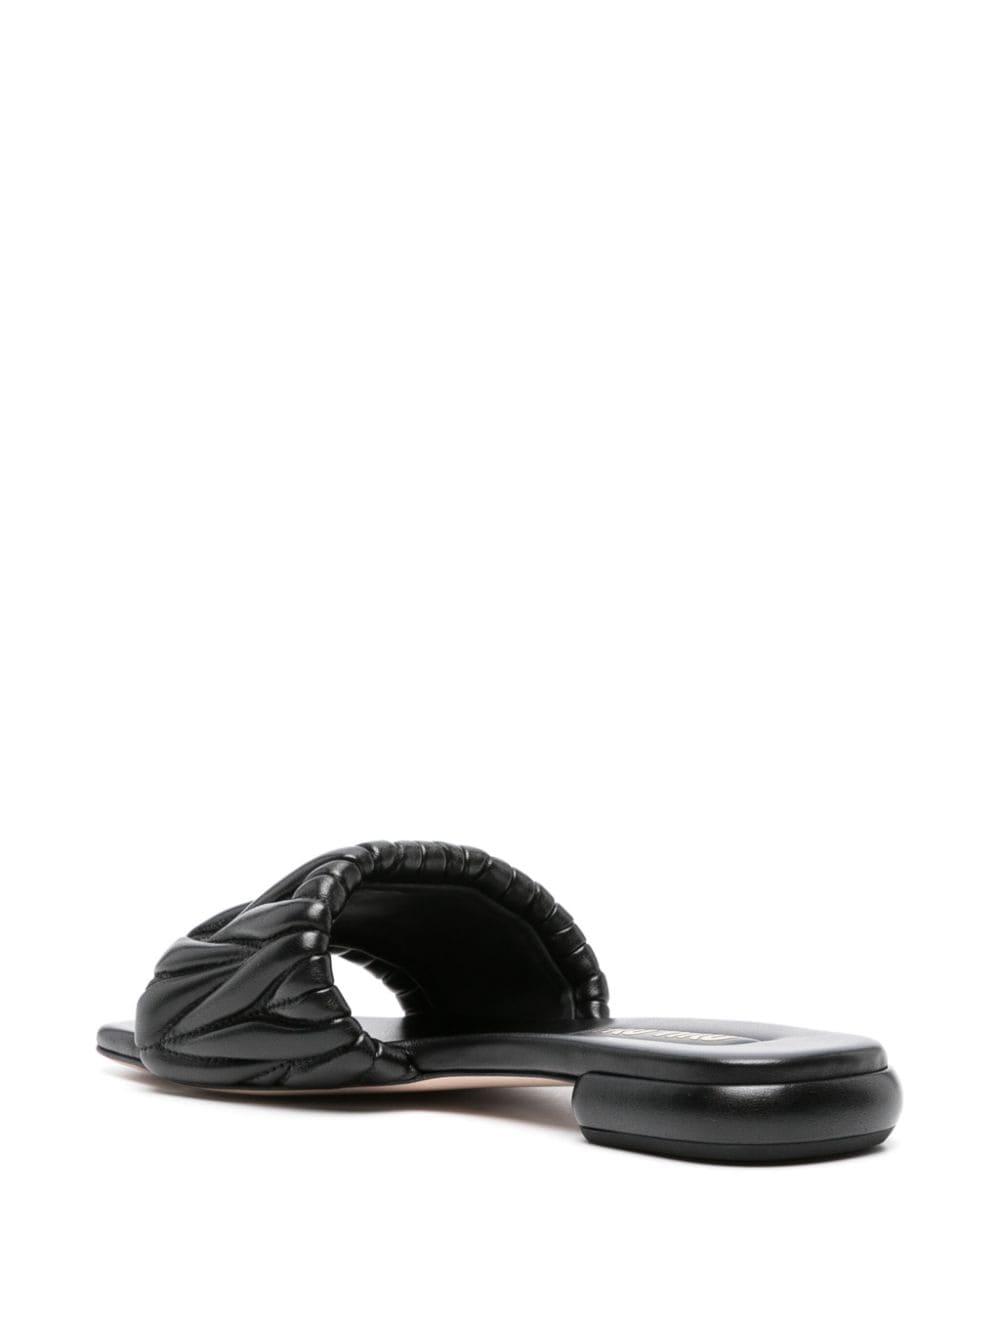 Black Matelassé leather slides<BR/><BR/><BR/>